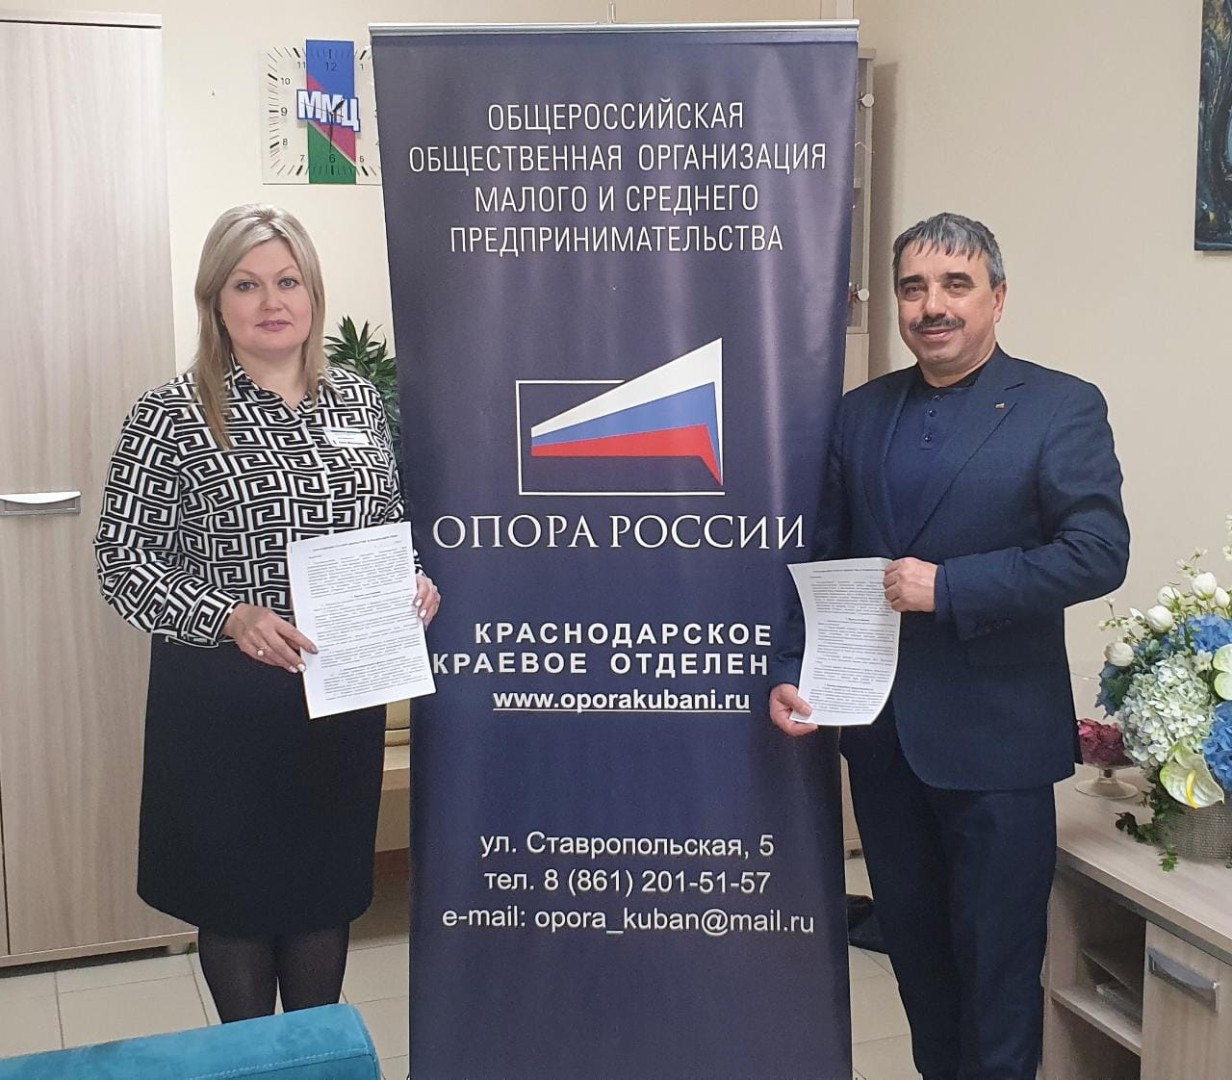 Соглашение о сотрудничестве ККО "ОПОРА РОССИИ" с ГБУ КК «Многофункциональный миграционный центр».